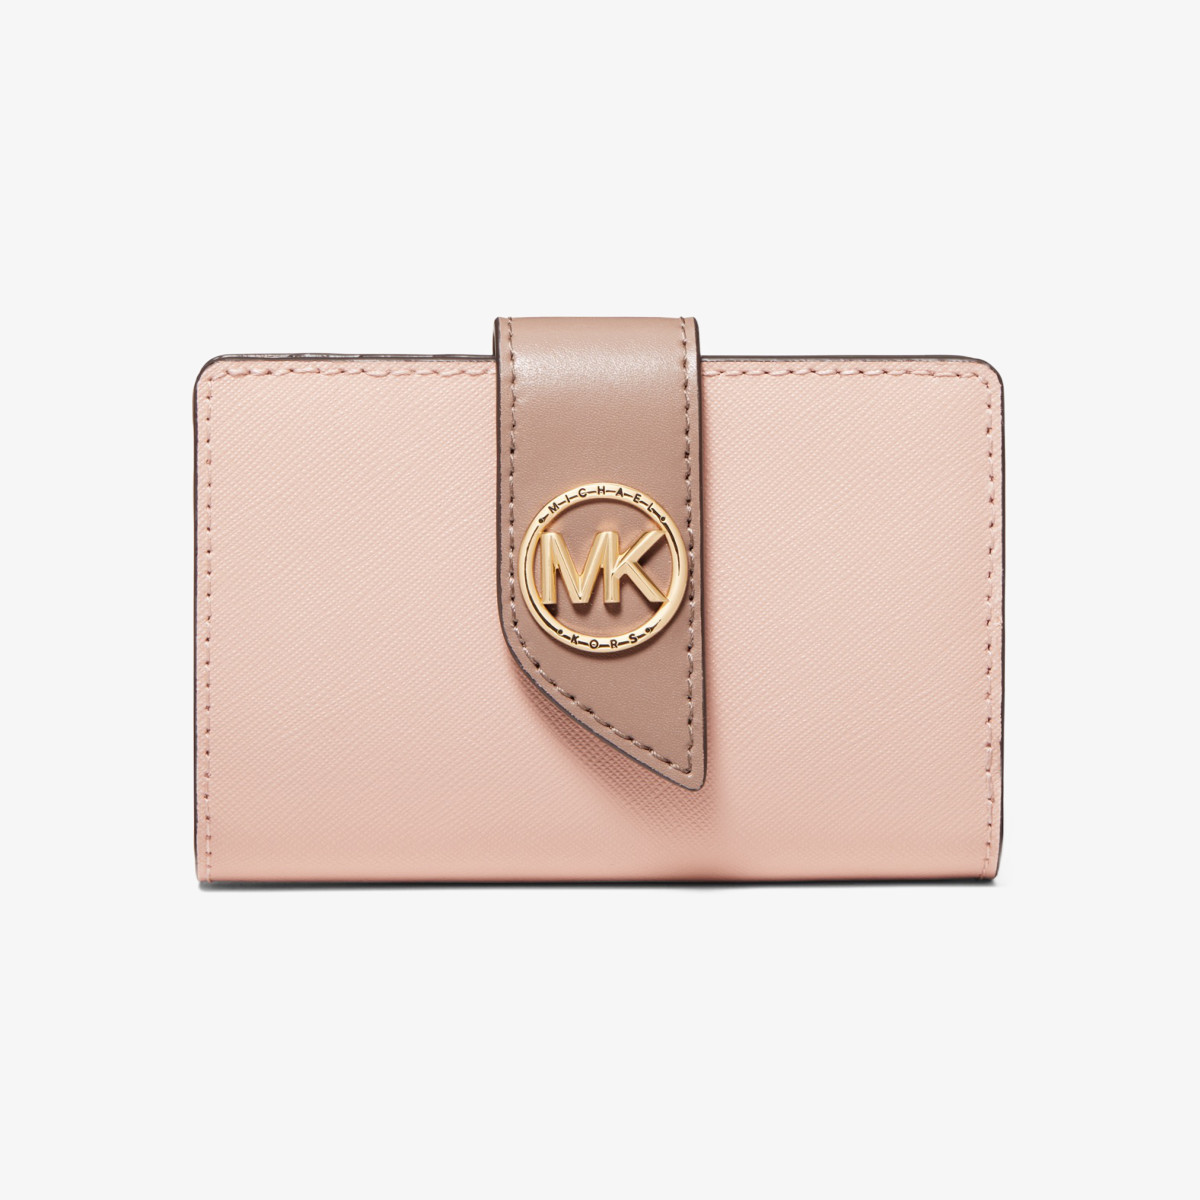 ピンク系×マルチカラーMICHEAL KORS☆財布